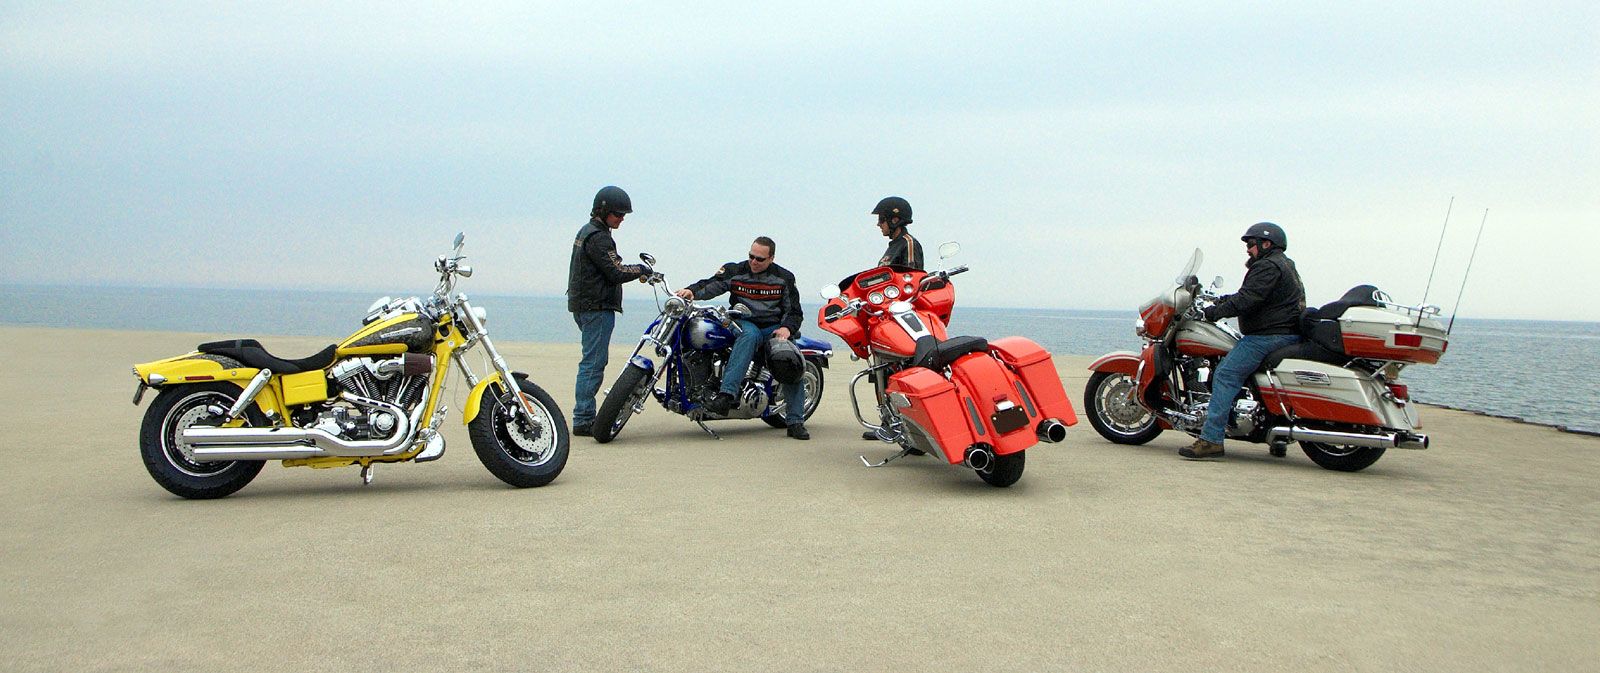  2009 Harley-Davidson CVO lineup 3 bikes and riders